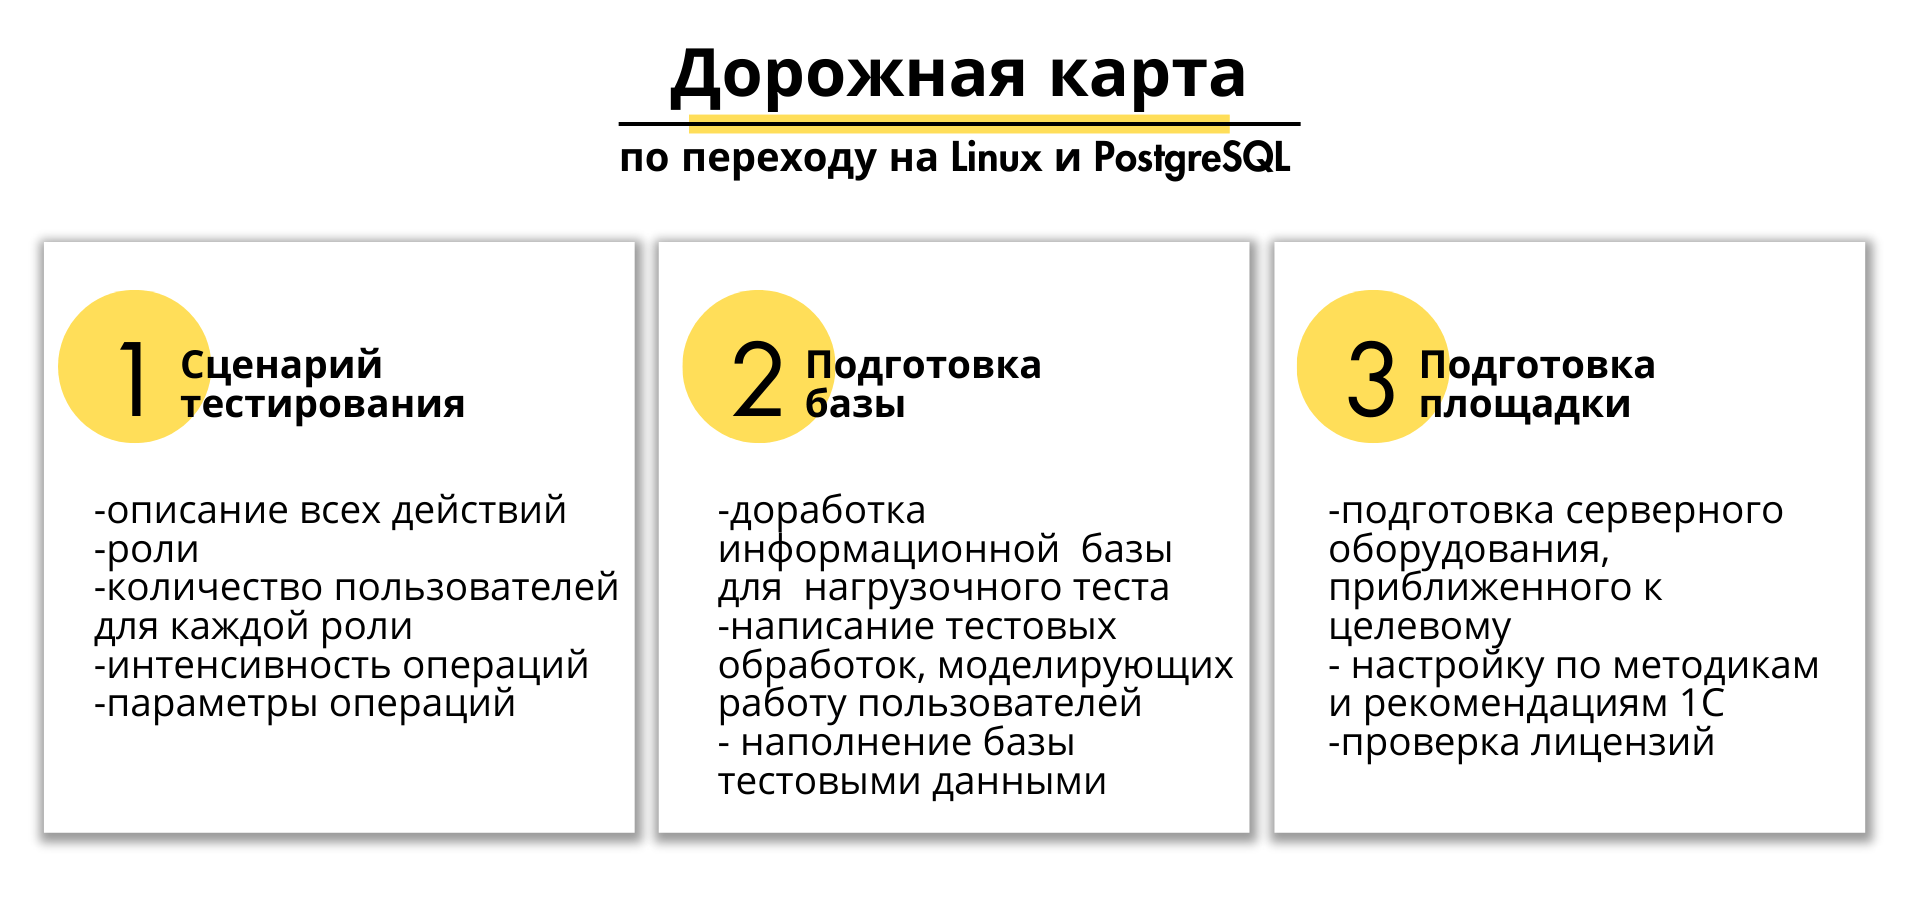 Дорожная карта по переводу информационных систем на Linux + PosgteSQL